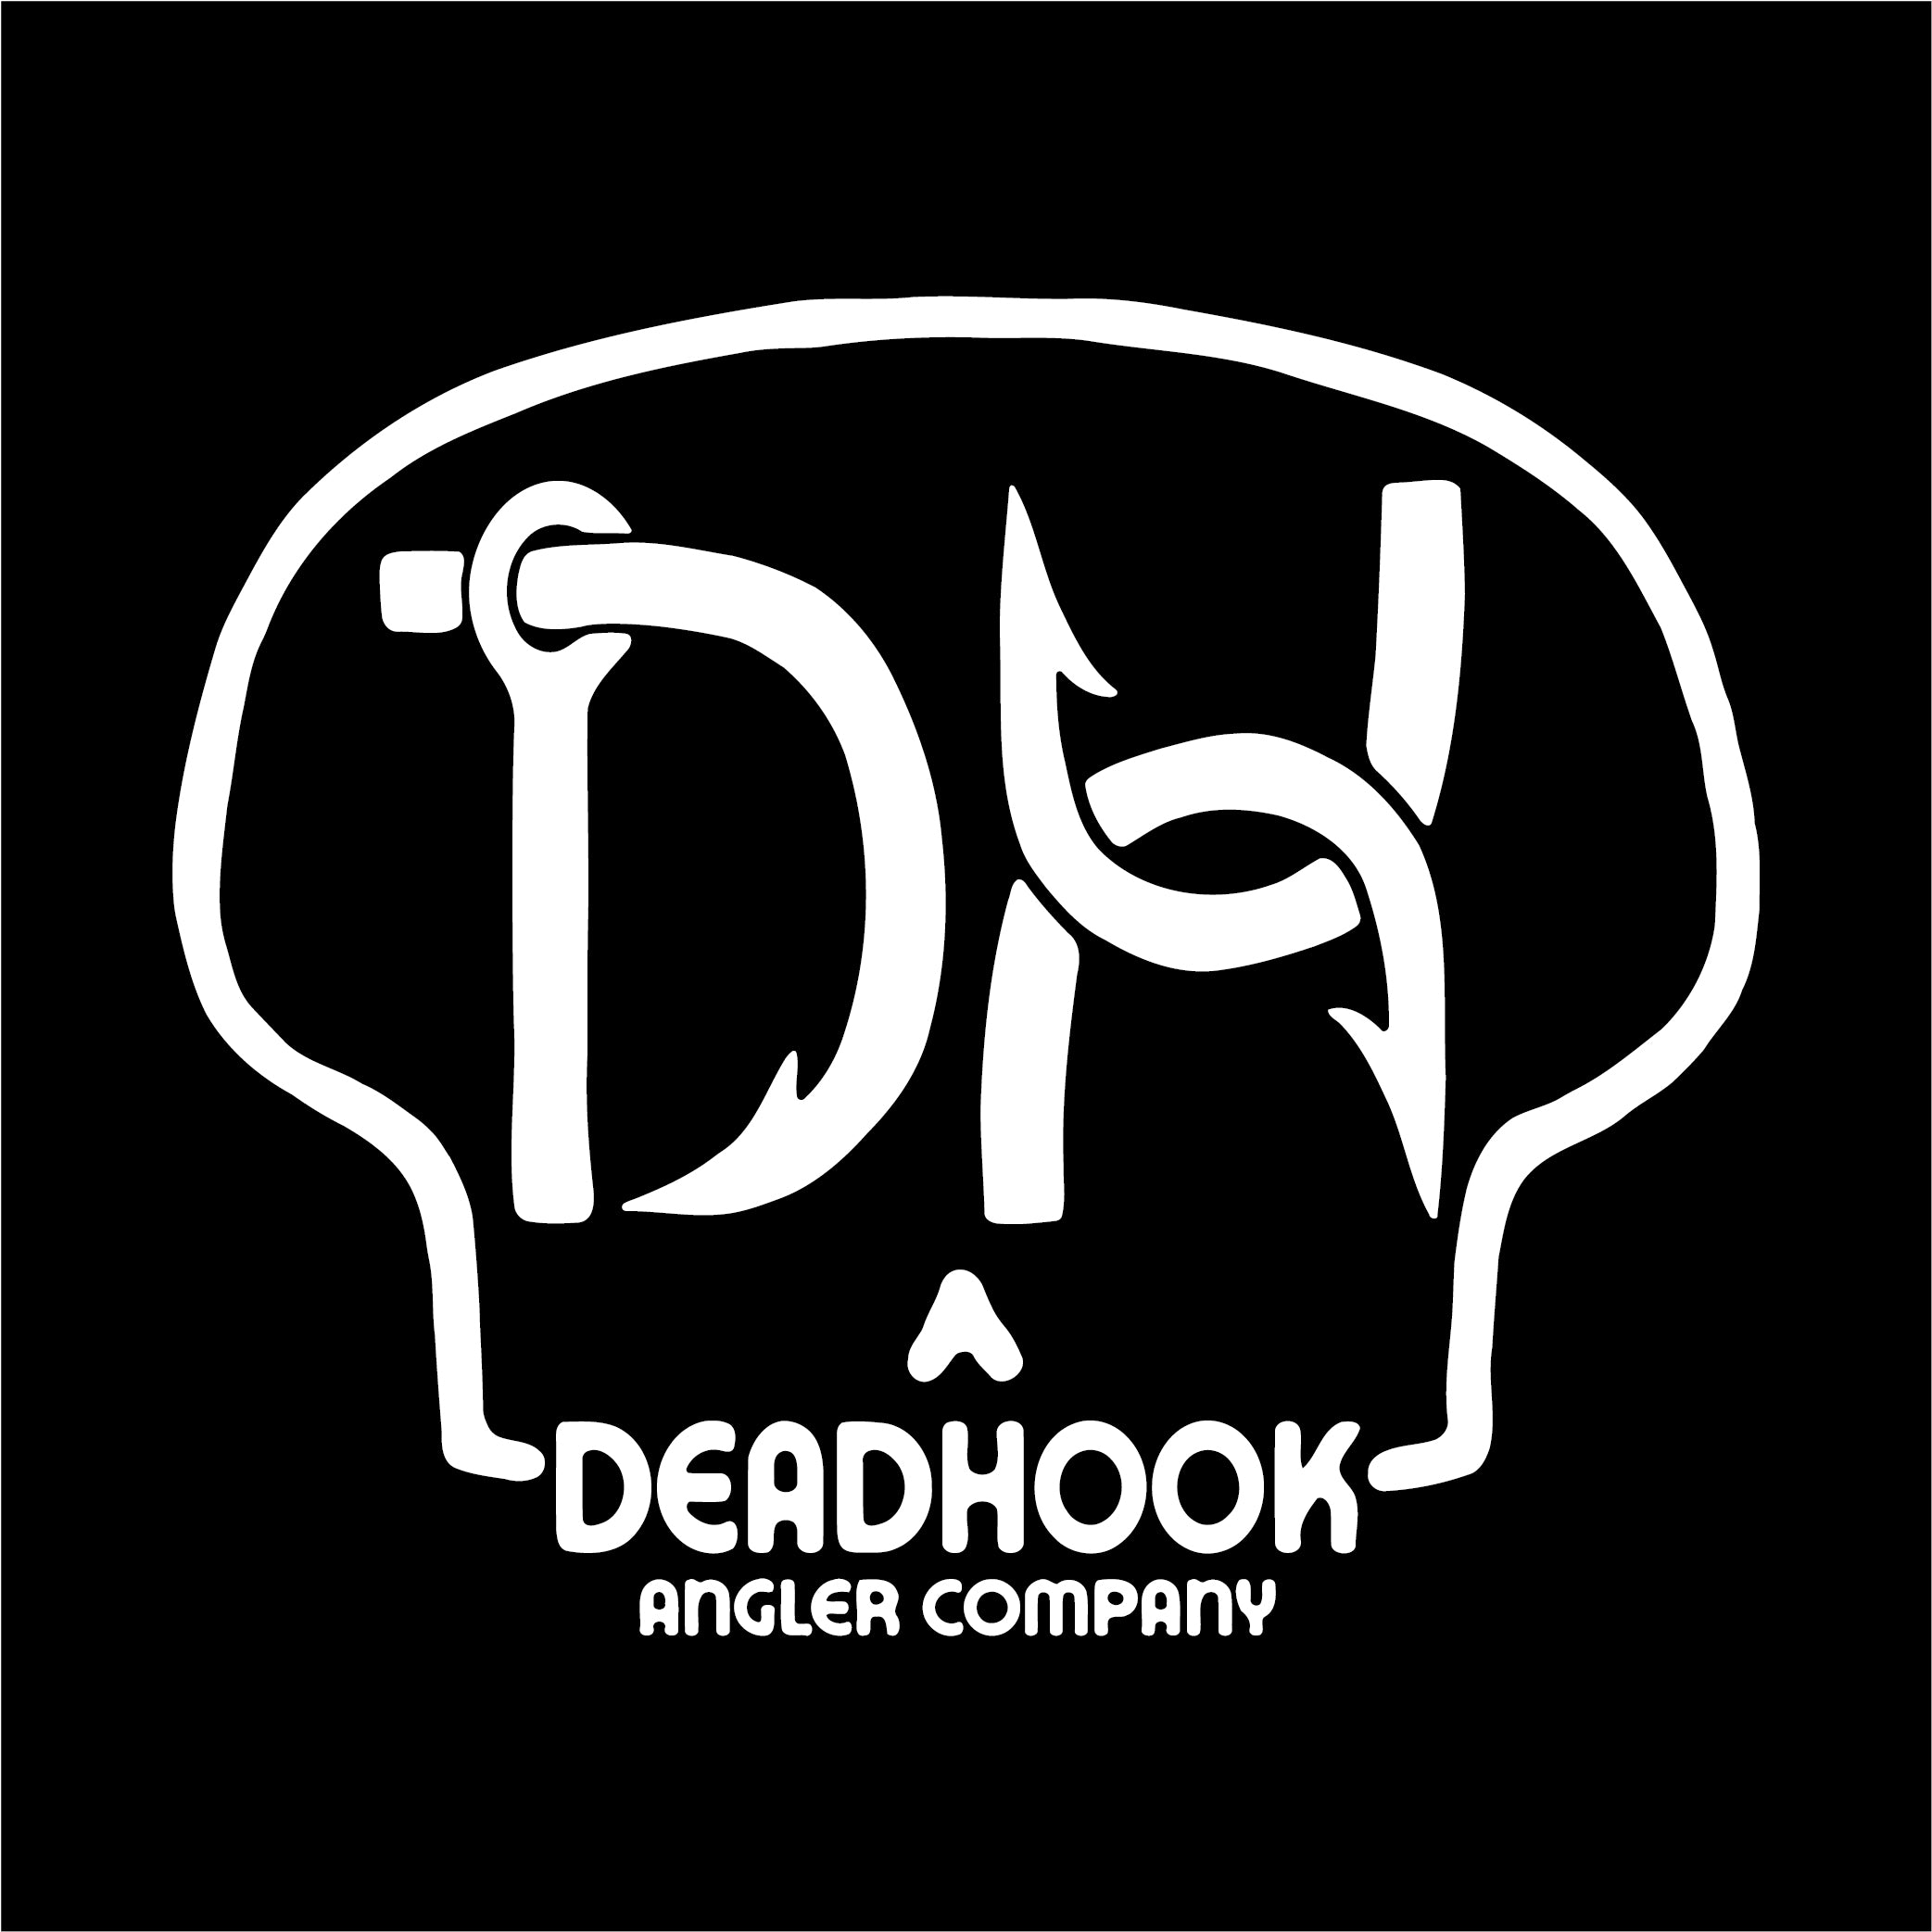 Deadhook Angler Co.